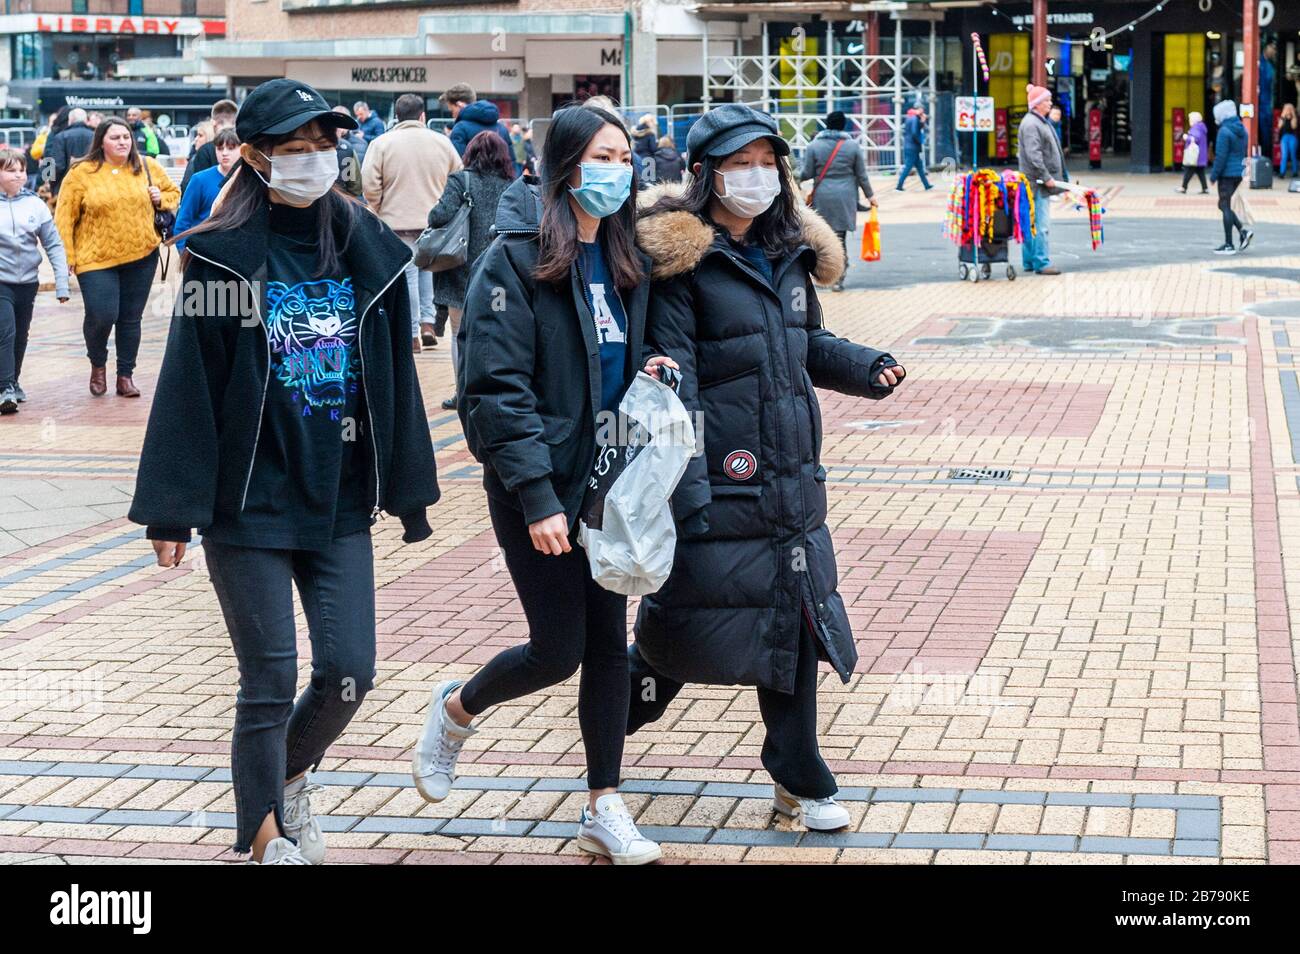 Coventry, West Midlands, Reino Unido. 14 de marzo de 2020. La pandemia del Coronavirus obligó a los compradores a usar máscaras protectoras en el centro de la ciudad de Coventry esta tarde. Crédito: Andy Gibson/Alamy Live News Foto de stock